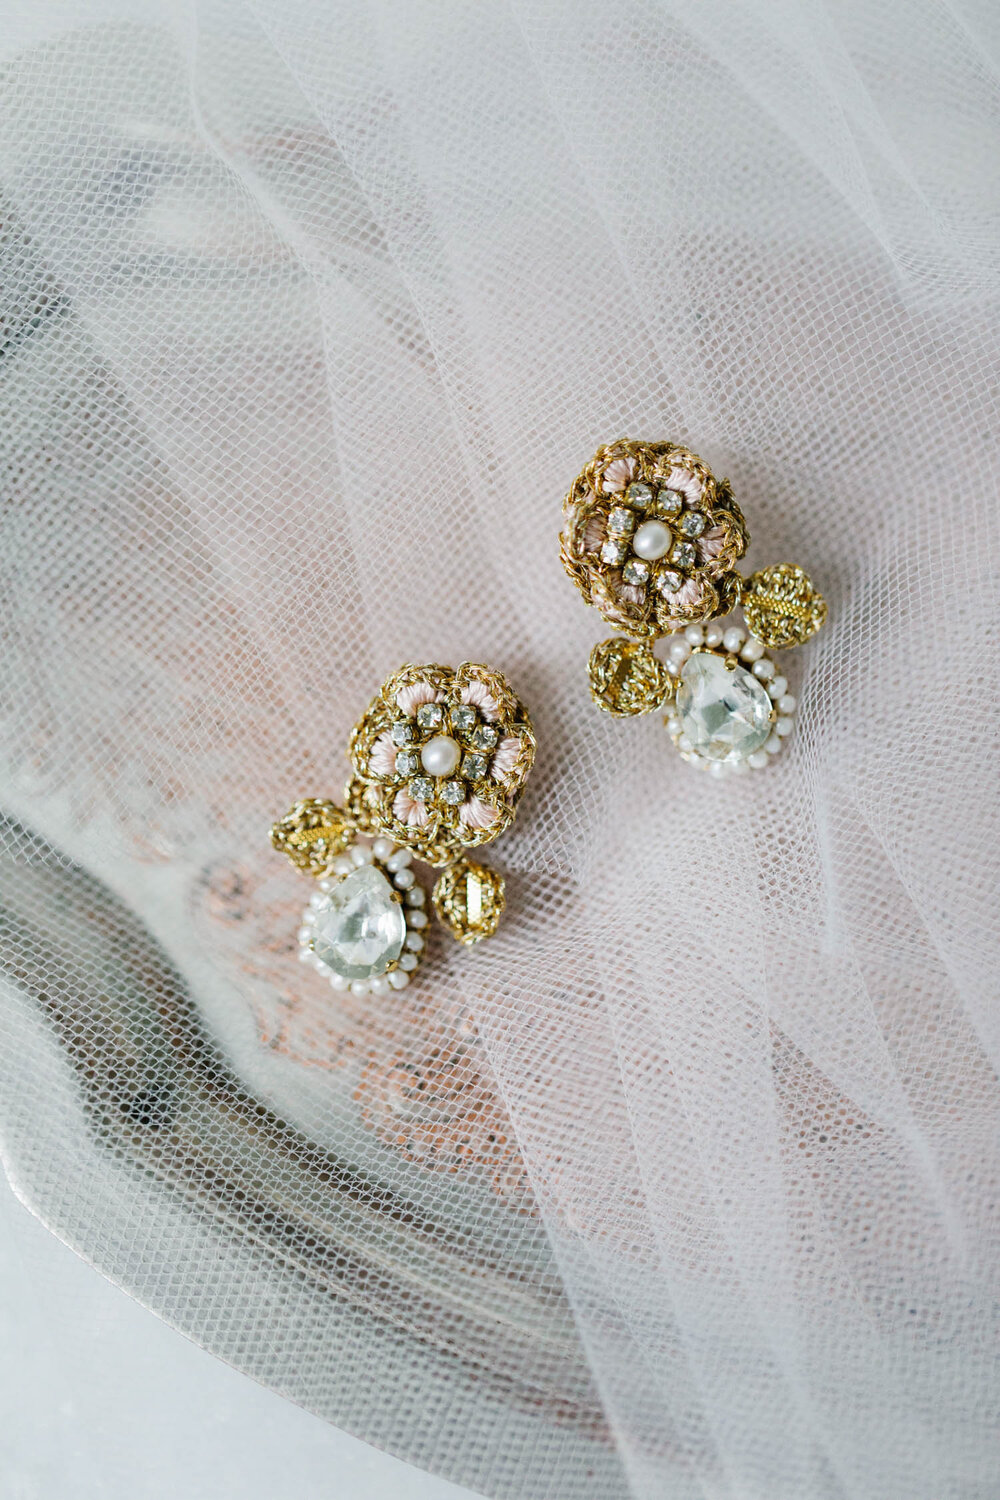 Vintage Rhinestone Bling Bridal Earrings Crystal Dangle Wedding Stud Earrings